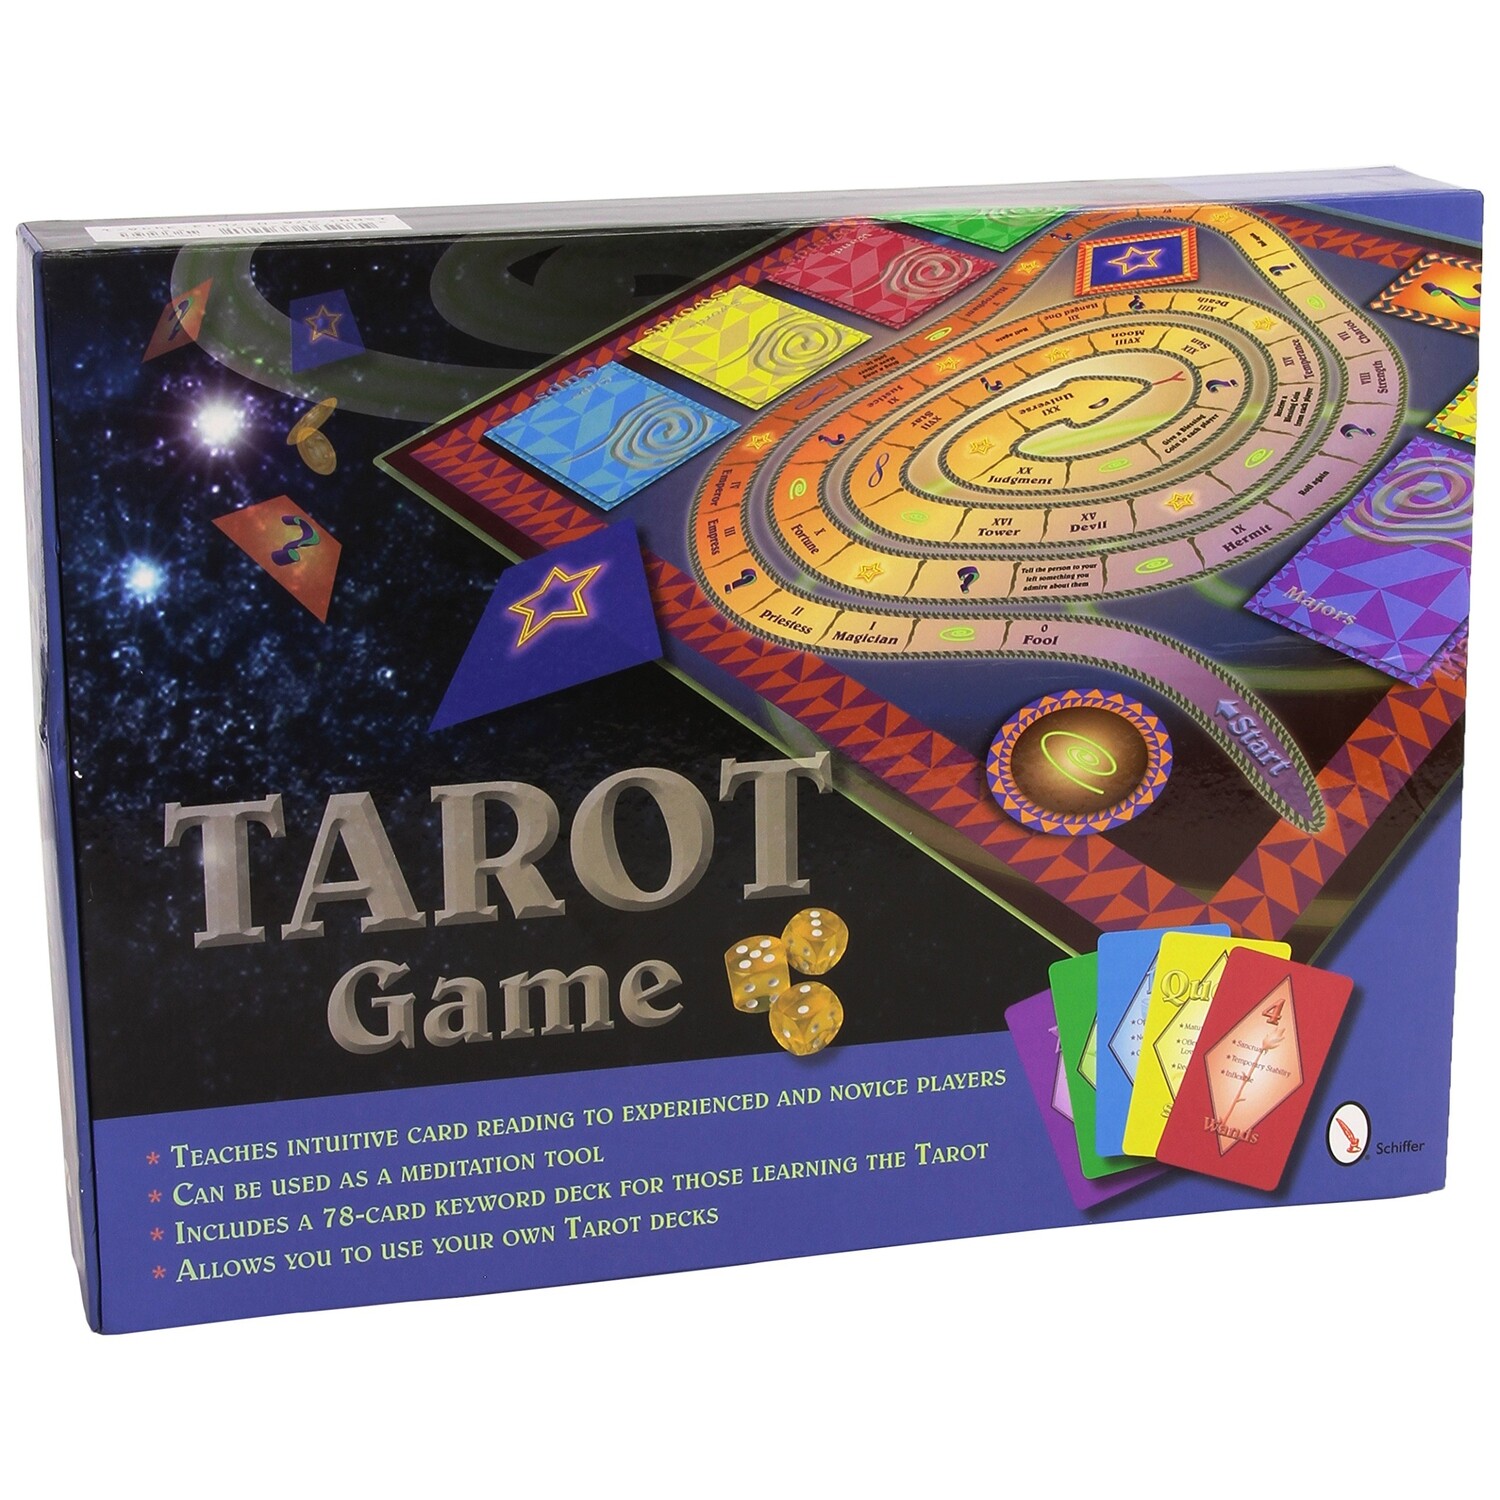 The Tarot Game